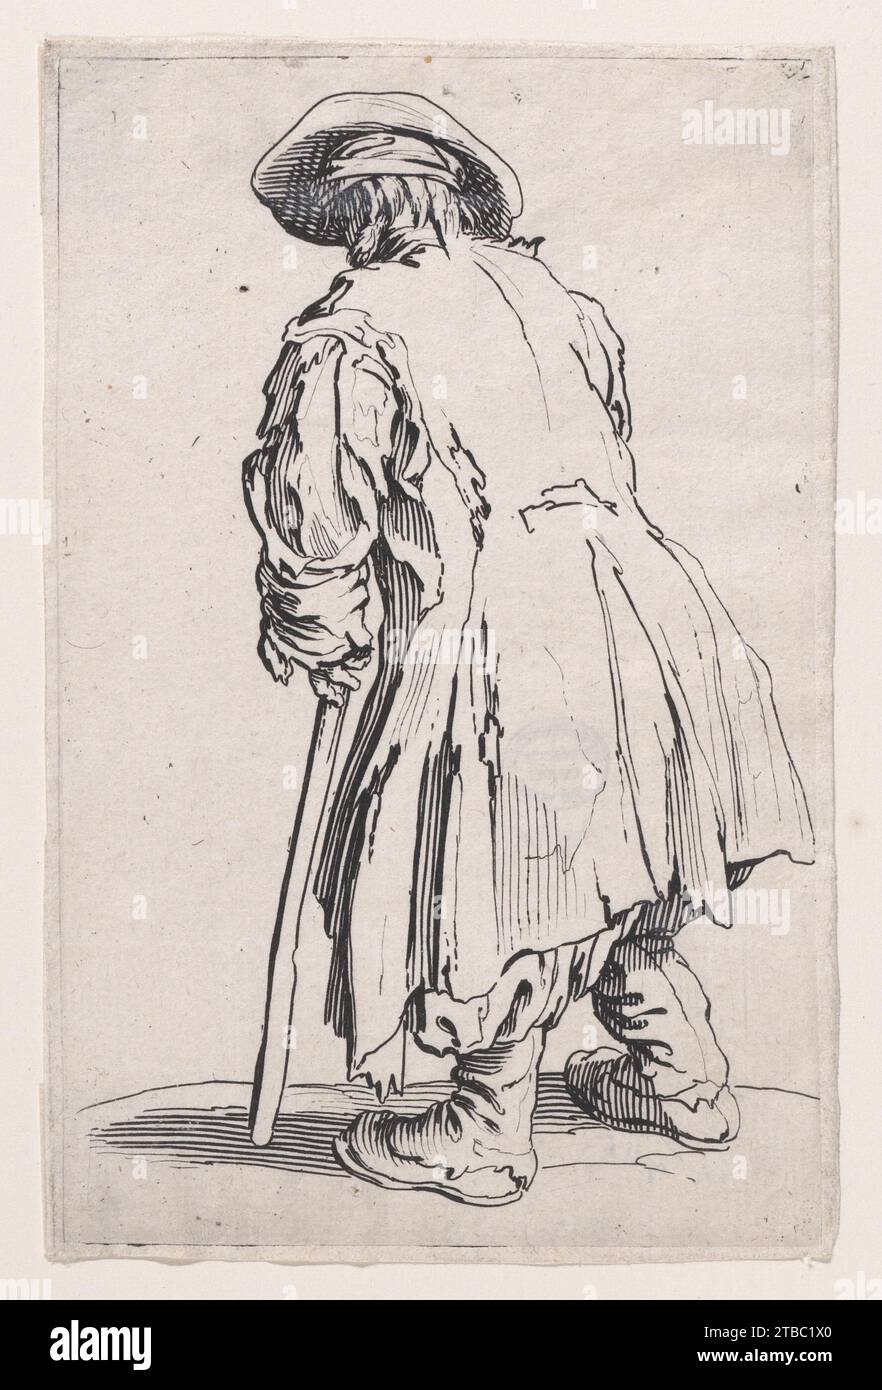 La Vieux Mendiant a une Seule Bequille (il vecchio mendicante con un solo crutch), da "Les Gueux suite appelee aussi Les mendiants, Les Baroni, ou Les Barons" (i mendicanti, chiamati anche i baroni) 1917 di Jacques Callot Foto Stock